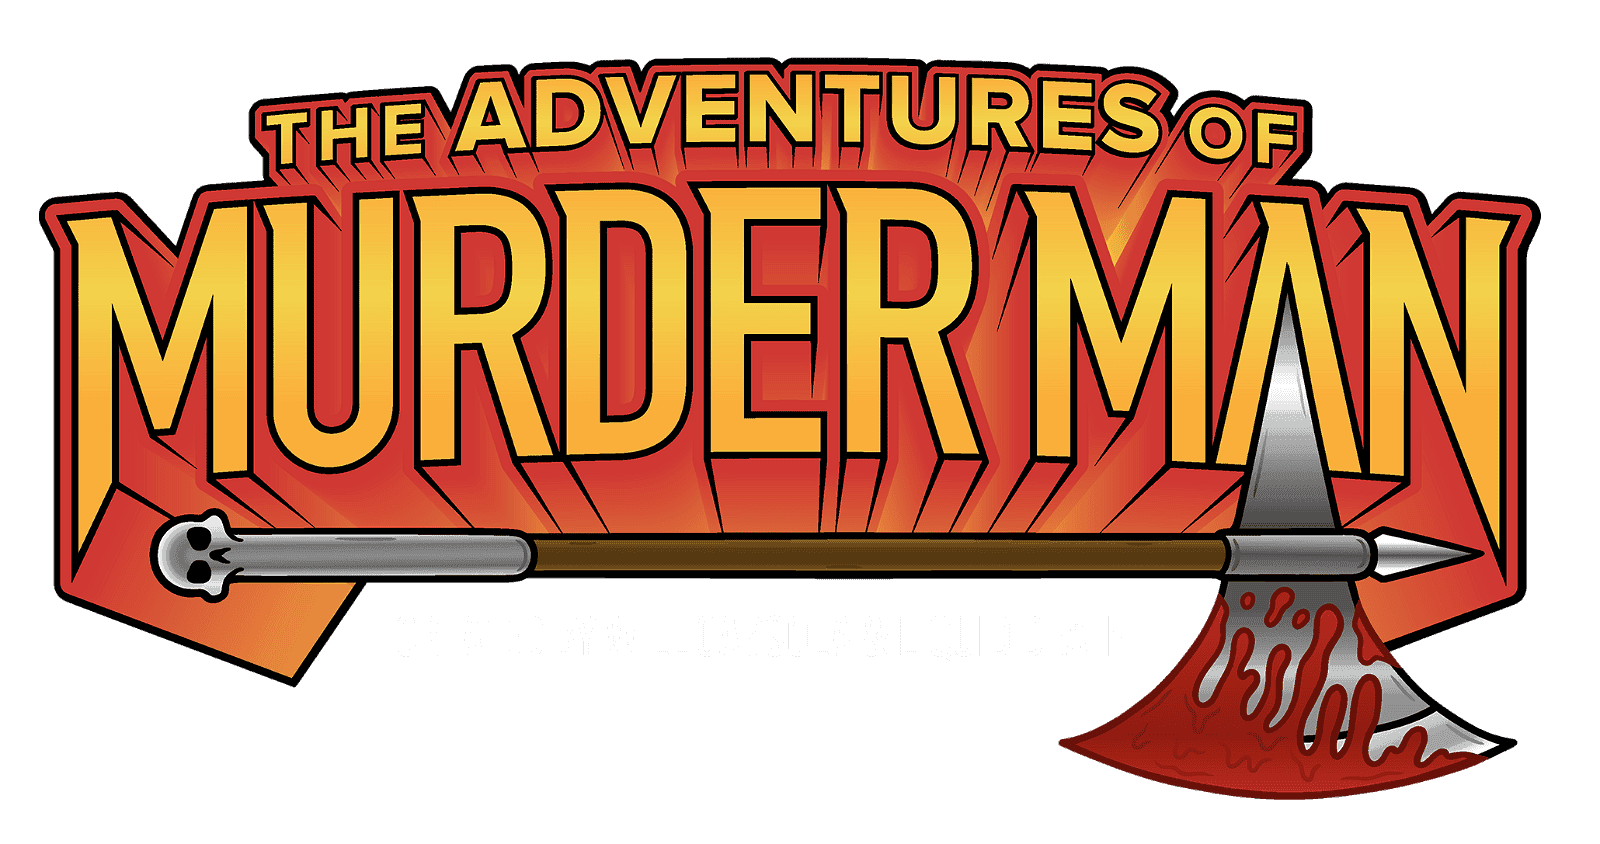 Adventures of Murder Man - Watch Video